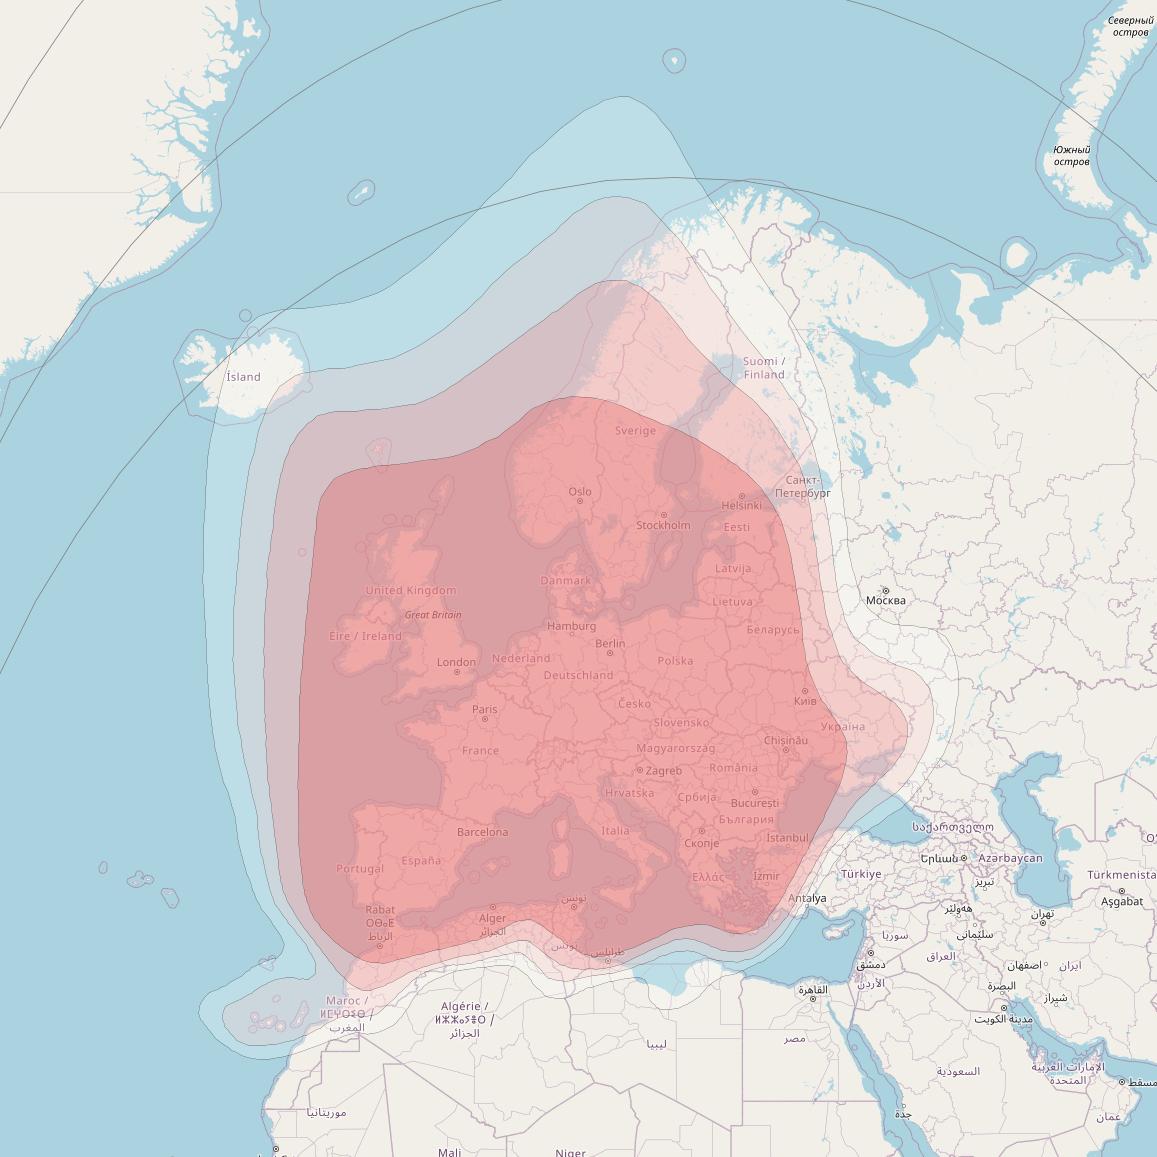 Astra 1M at 19° E downlink Ku-band European Beam coverage map